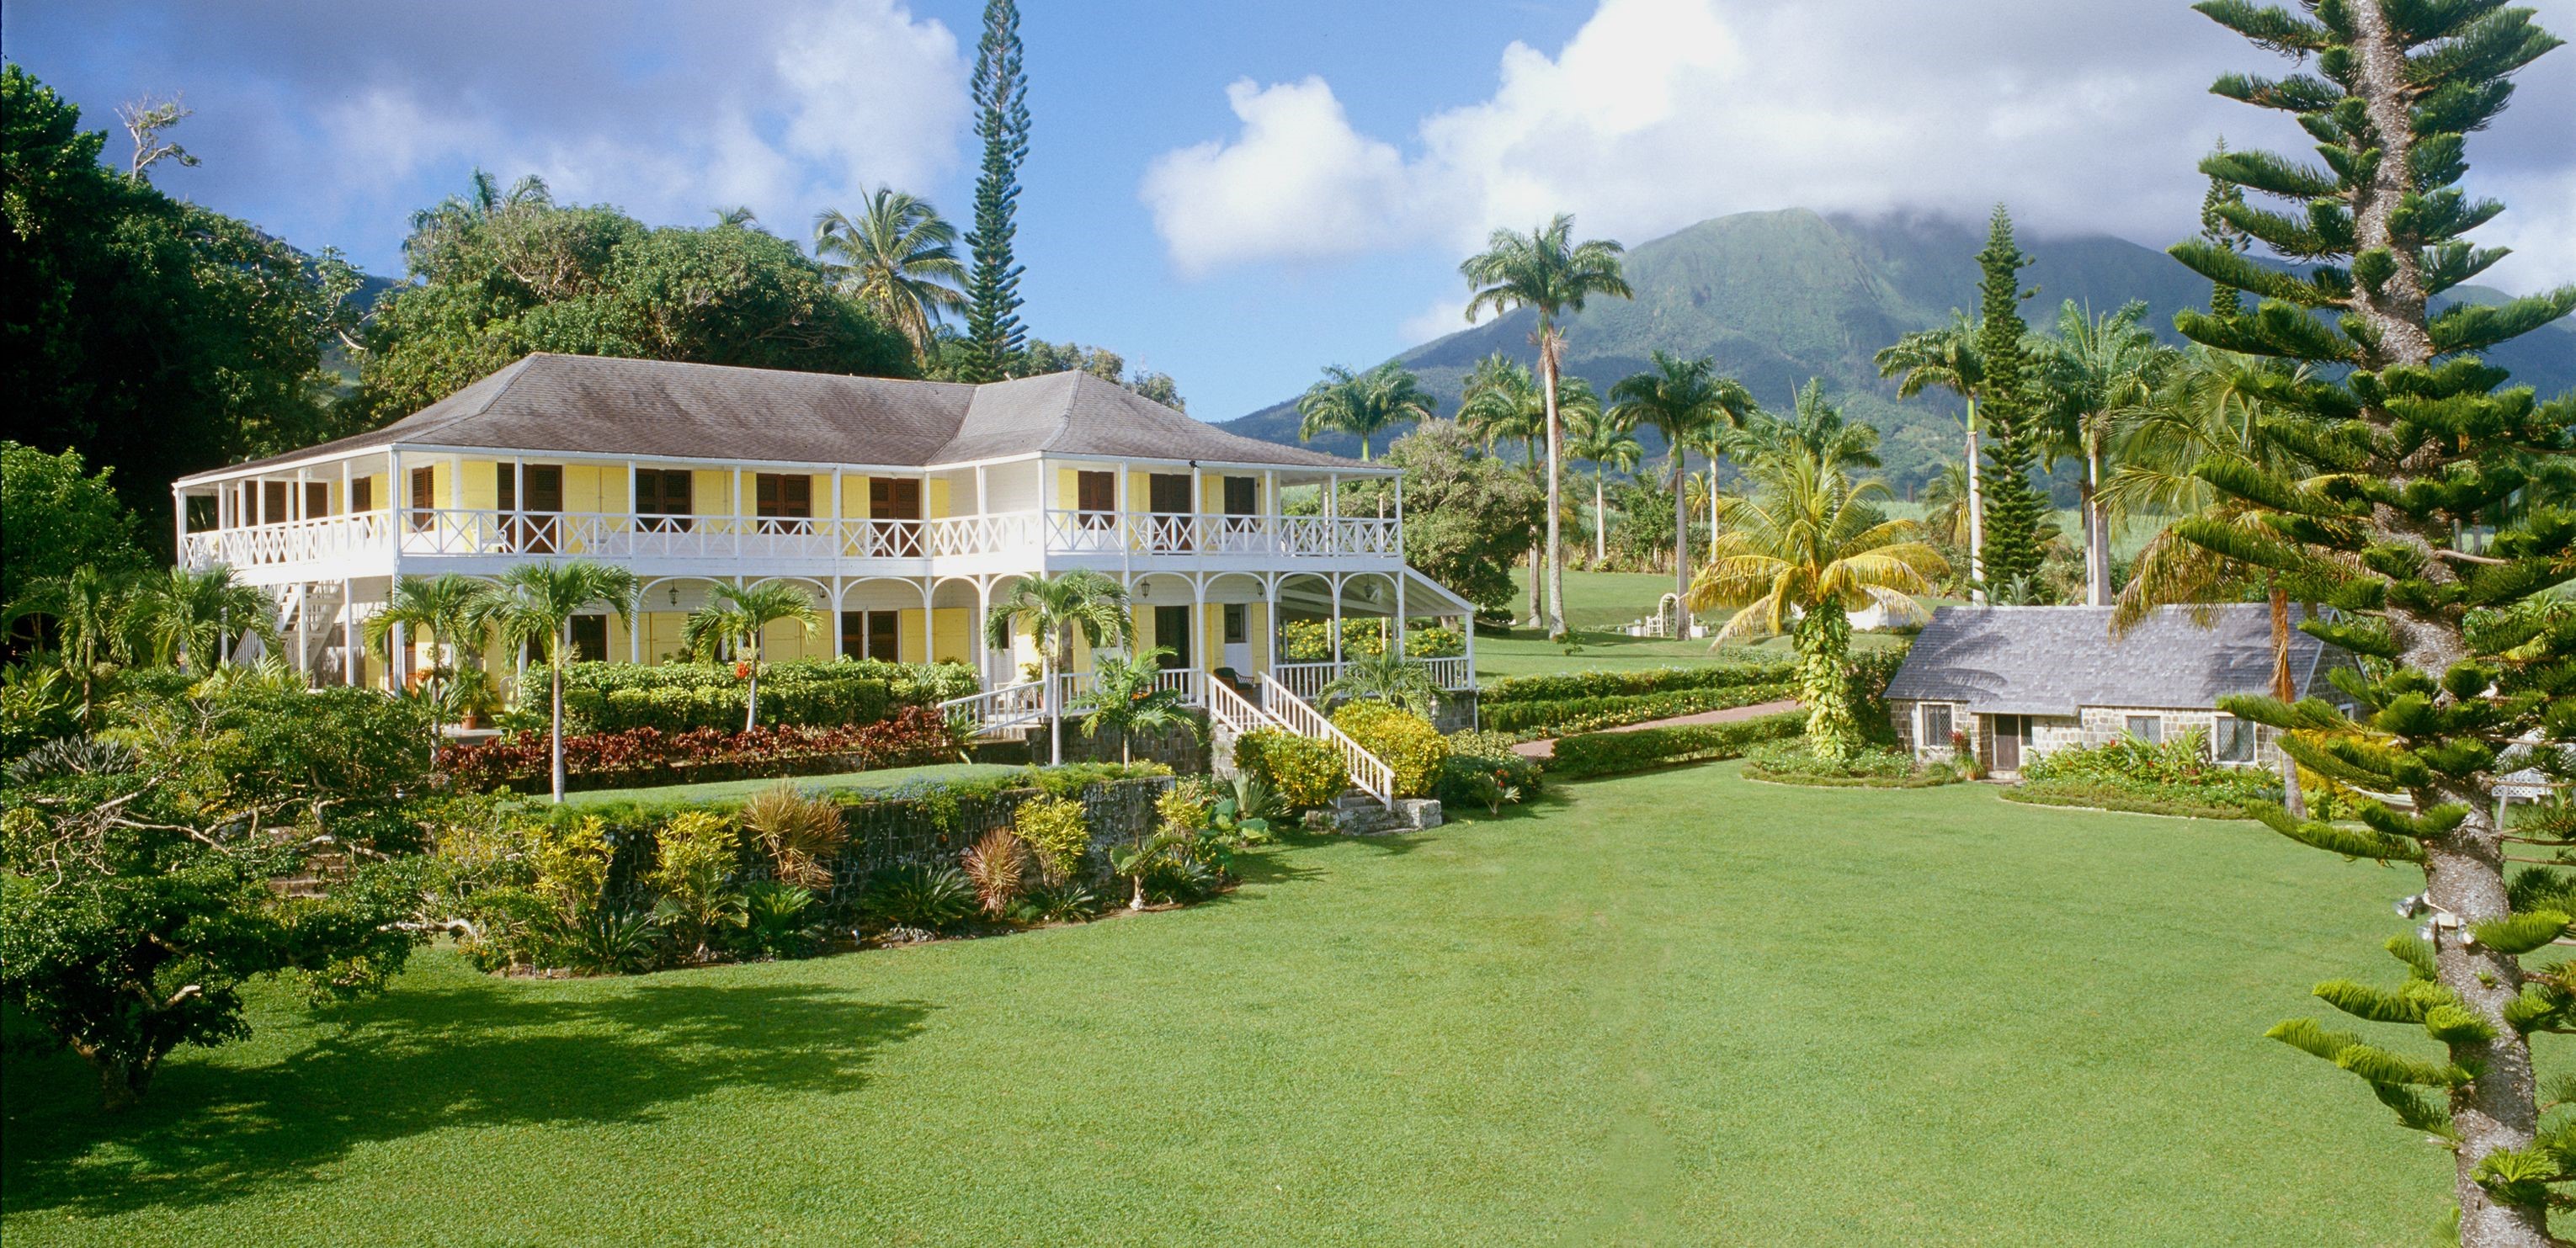 St Kitts-Nevis, St Kitts-Nevis, Ottley's Plantation Inn